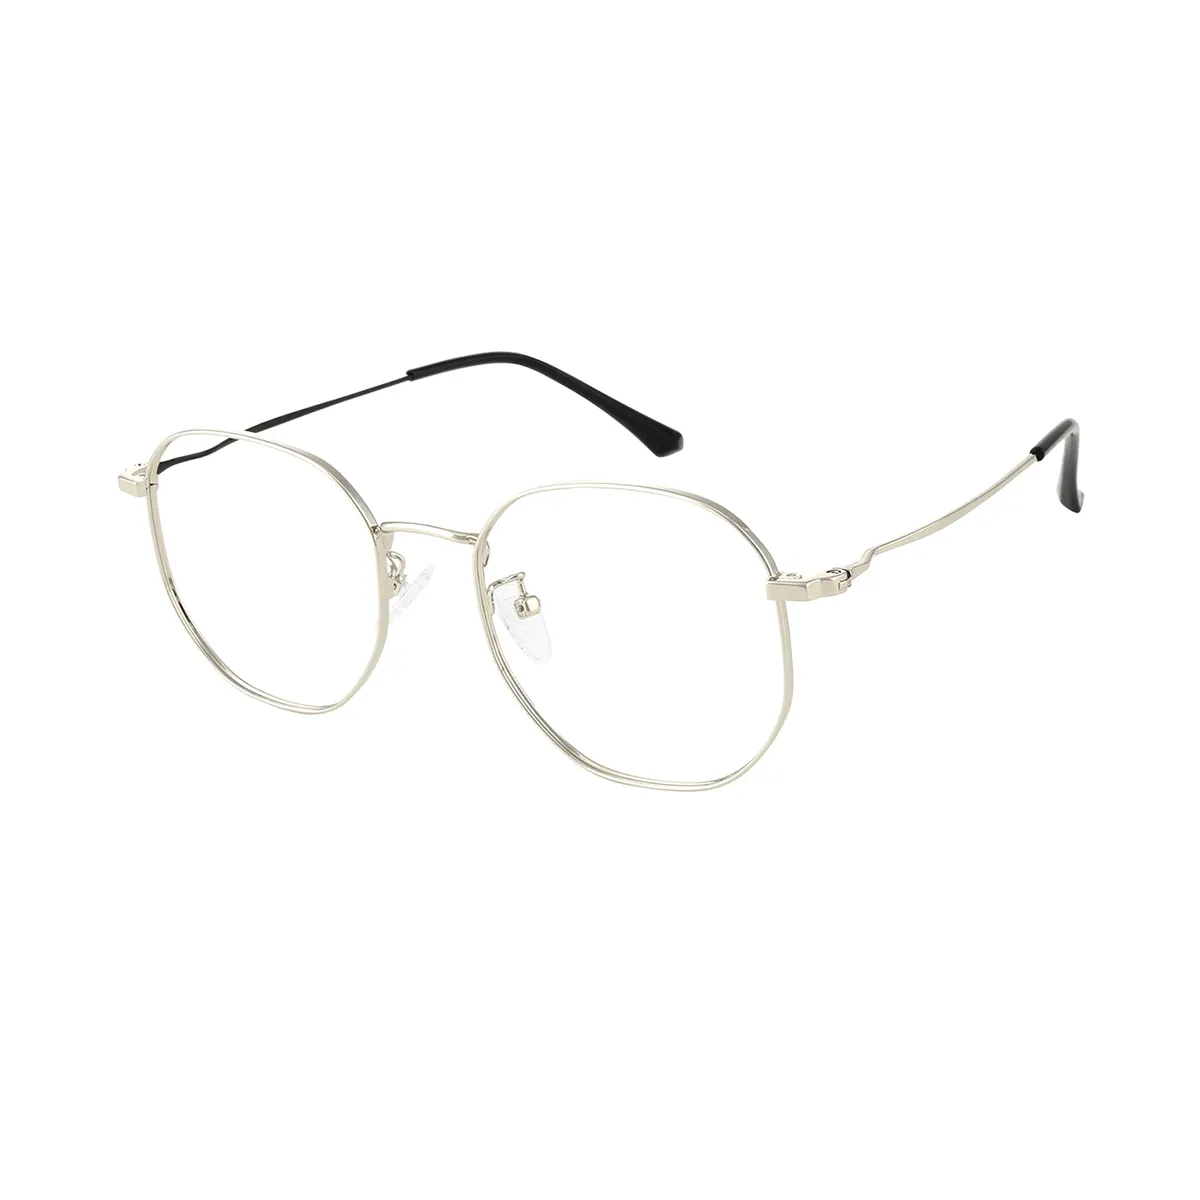 Classic Geometric Black-gold Eyeglasses for Women & Men